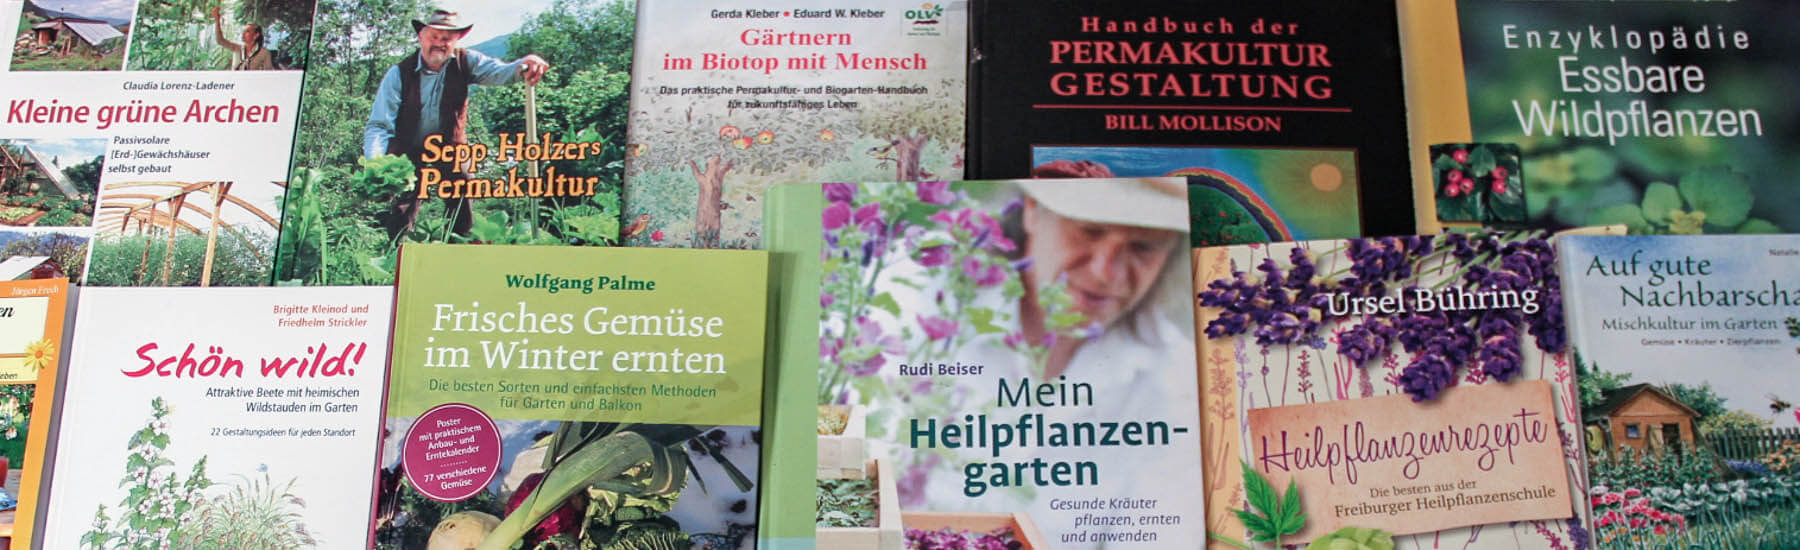 Verschiedene Bücher zum Thema Gärtnern, Permakultur und Naturgarten